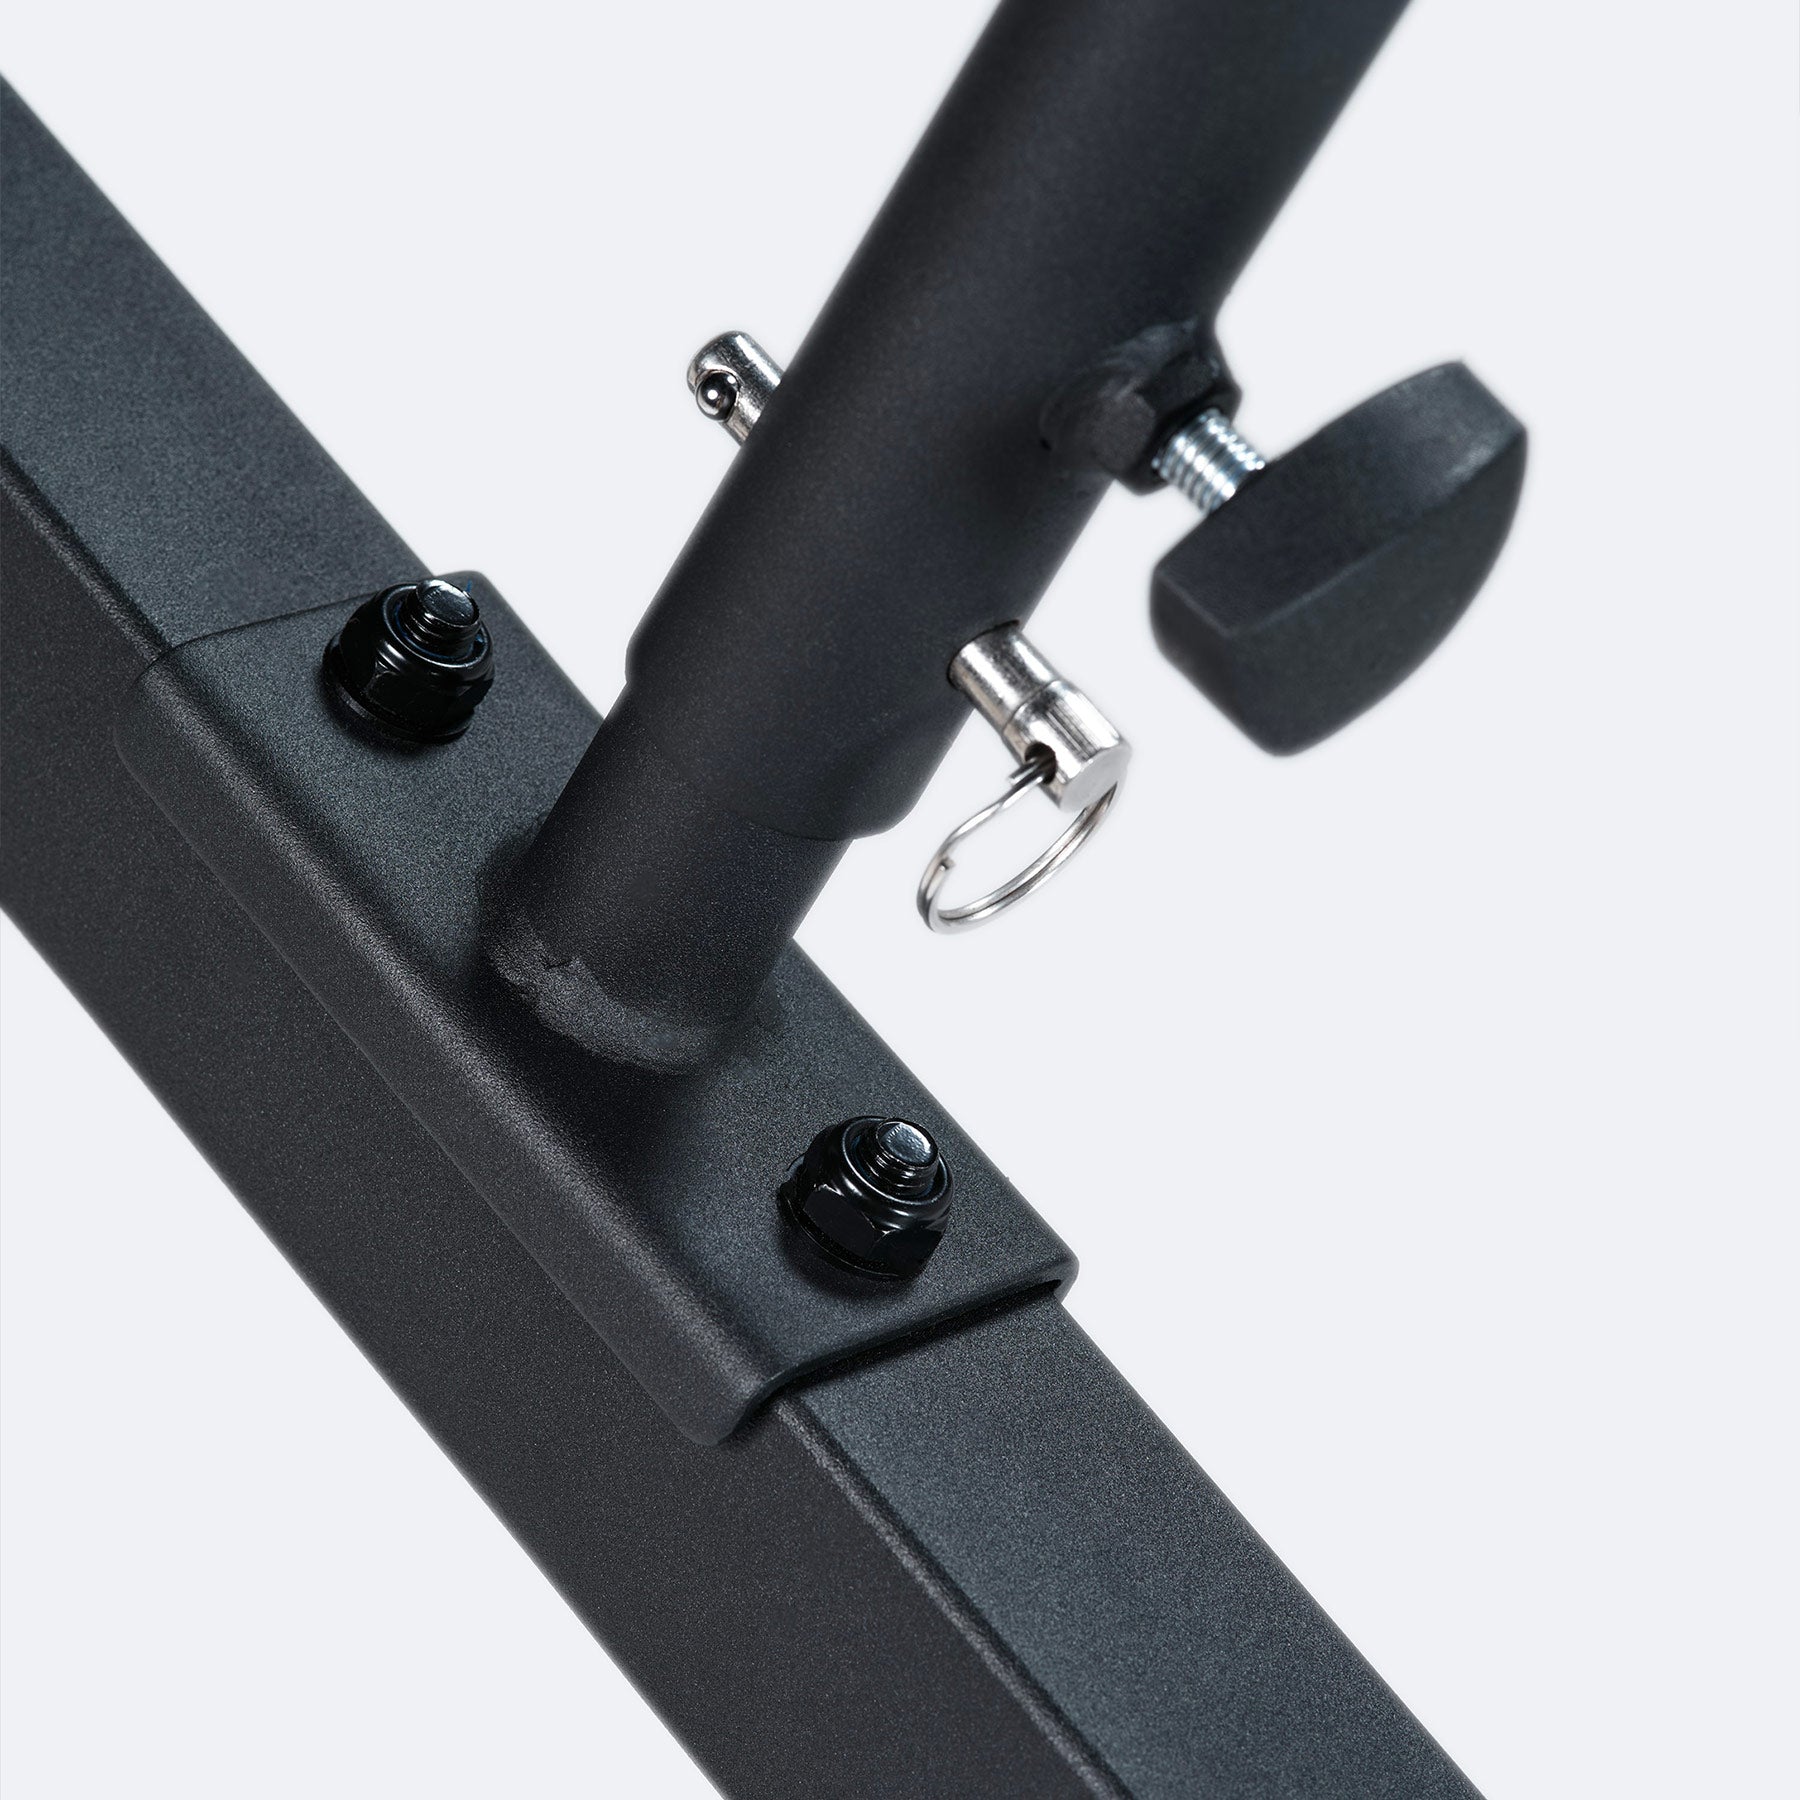 adjustable steel drawbar